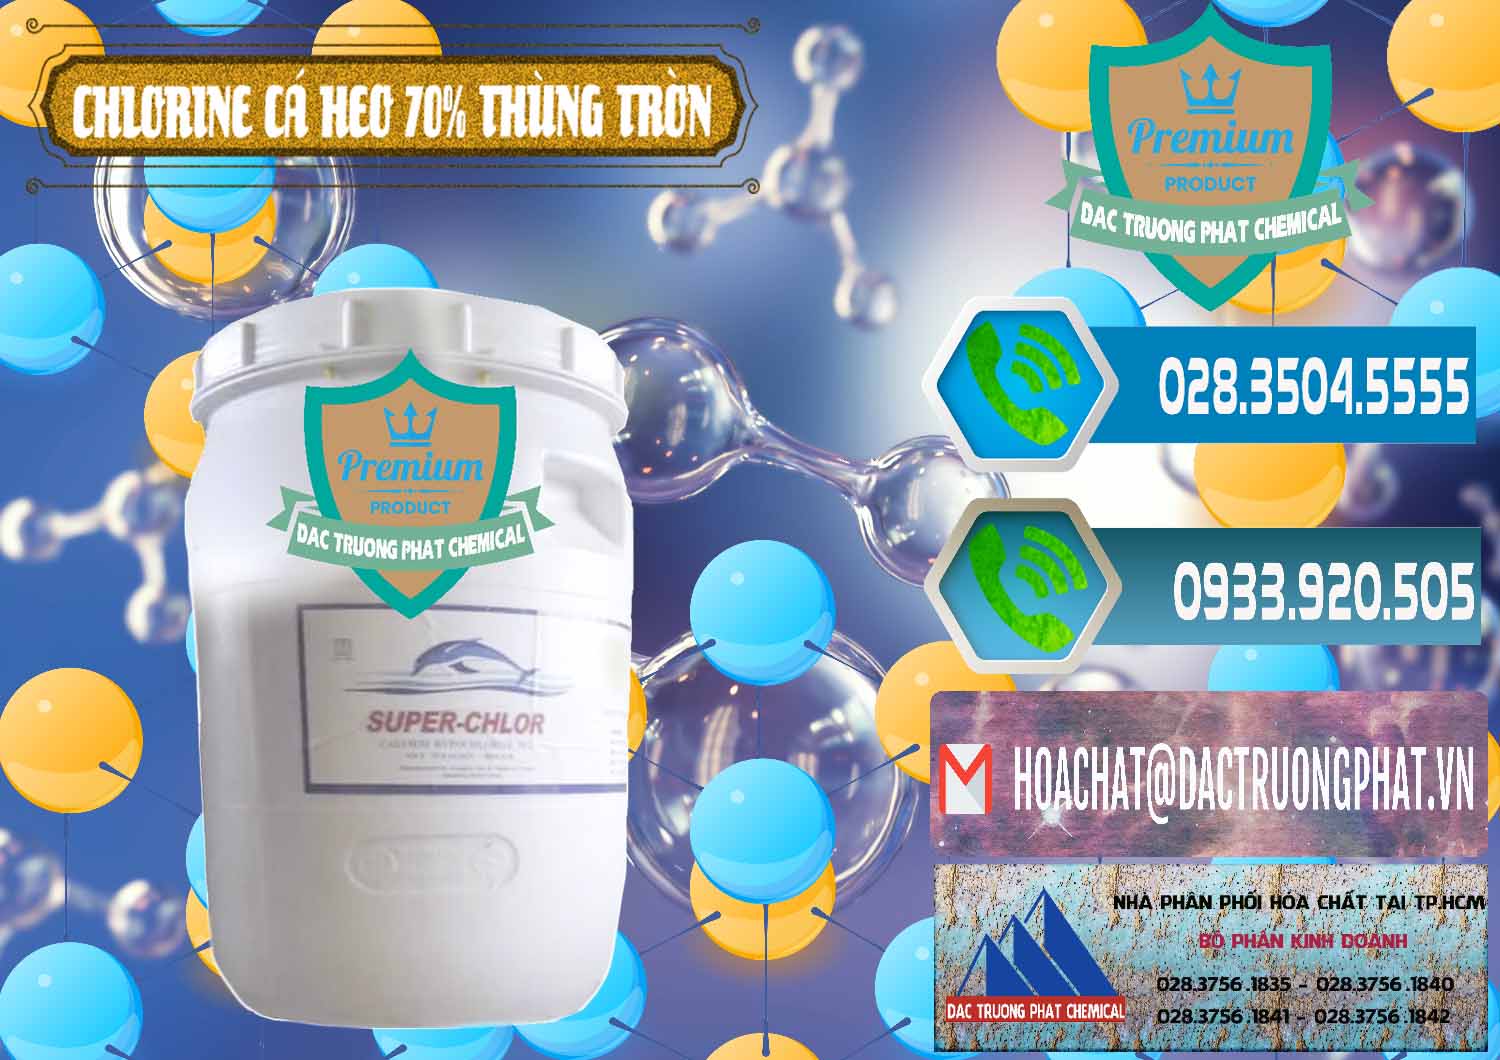 Nơi chuyên phân phối và bán Clorin - Chlorine Cá Heo 70% Super Chlor Thùng Tròn Nắp Trắng Trung Quốc China - 0239 - Nơi chuyên bán & cung cấp hóa chất tại TP.HCM - congtyhoachat.net